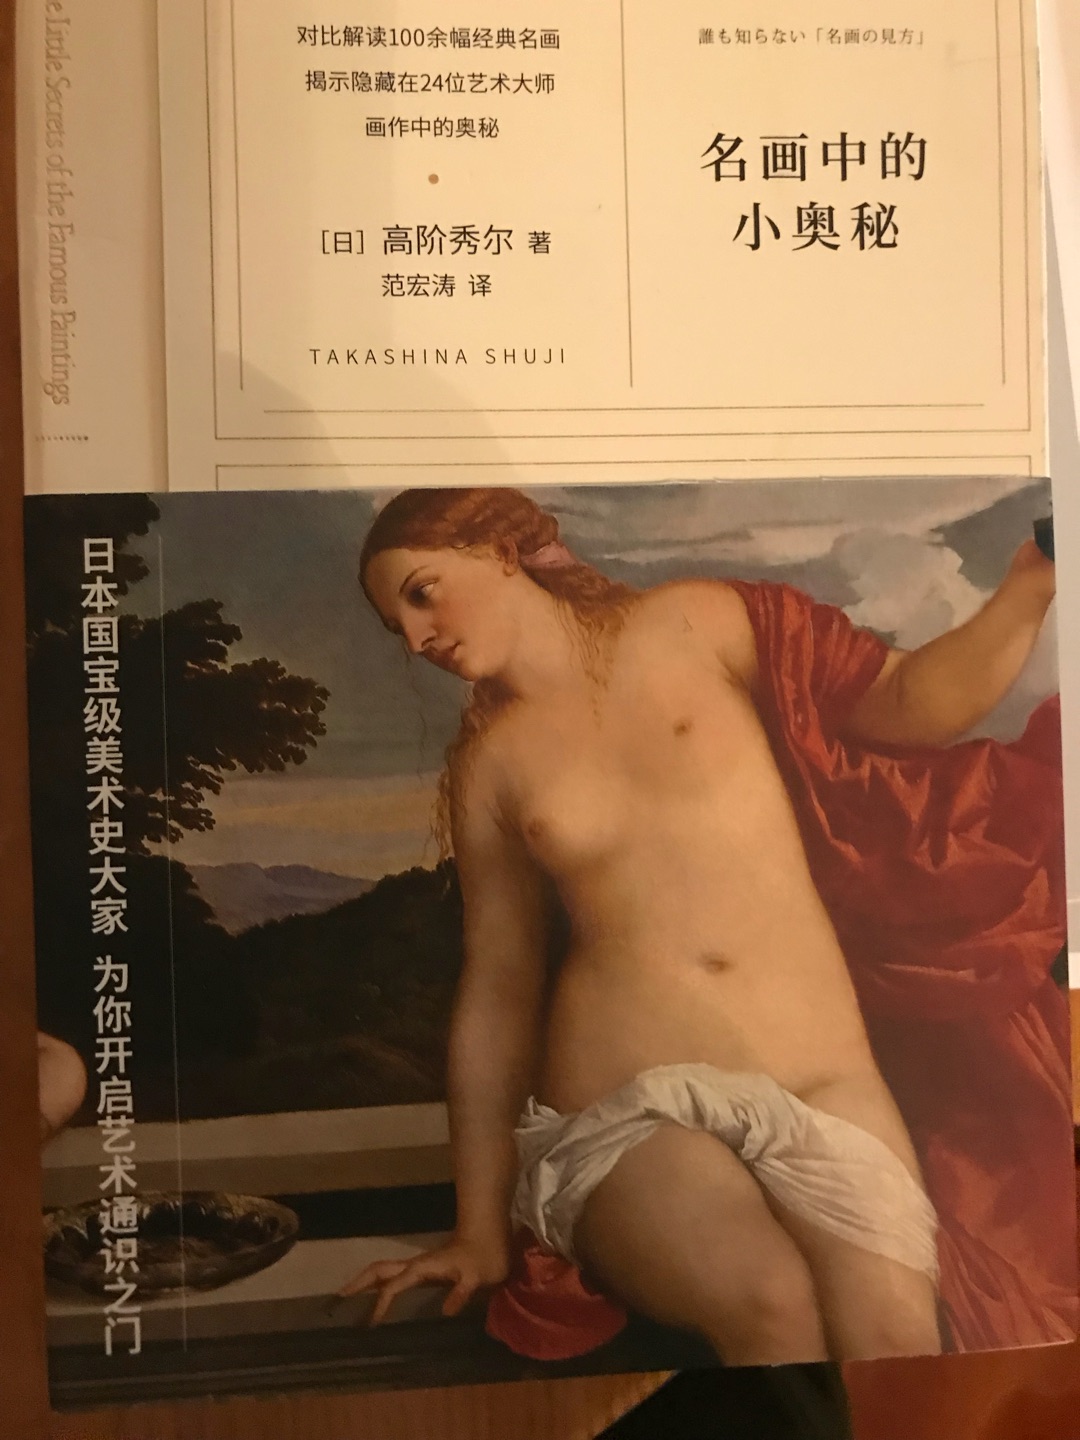 一共4本，日本评论家写的书，是用来学习欣赏名画美术史的好读物。